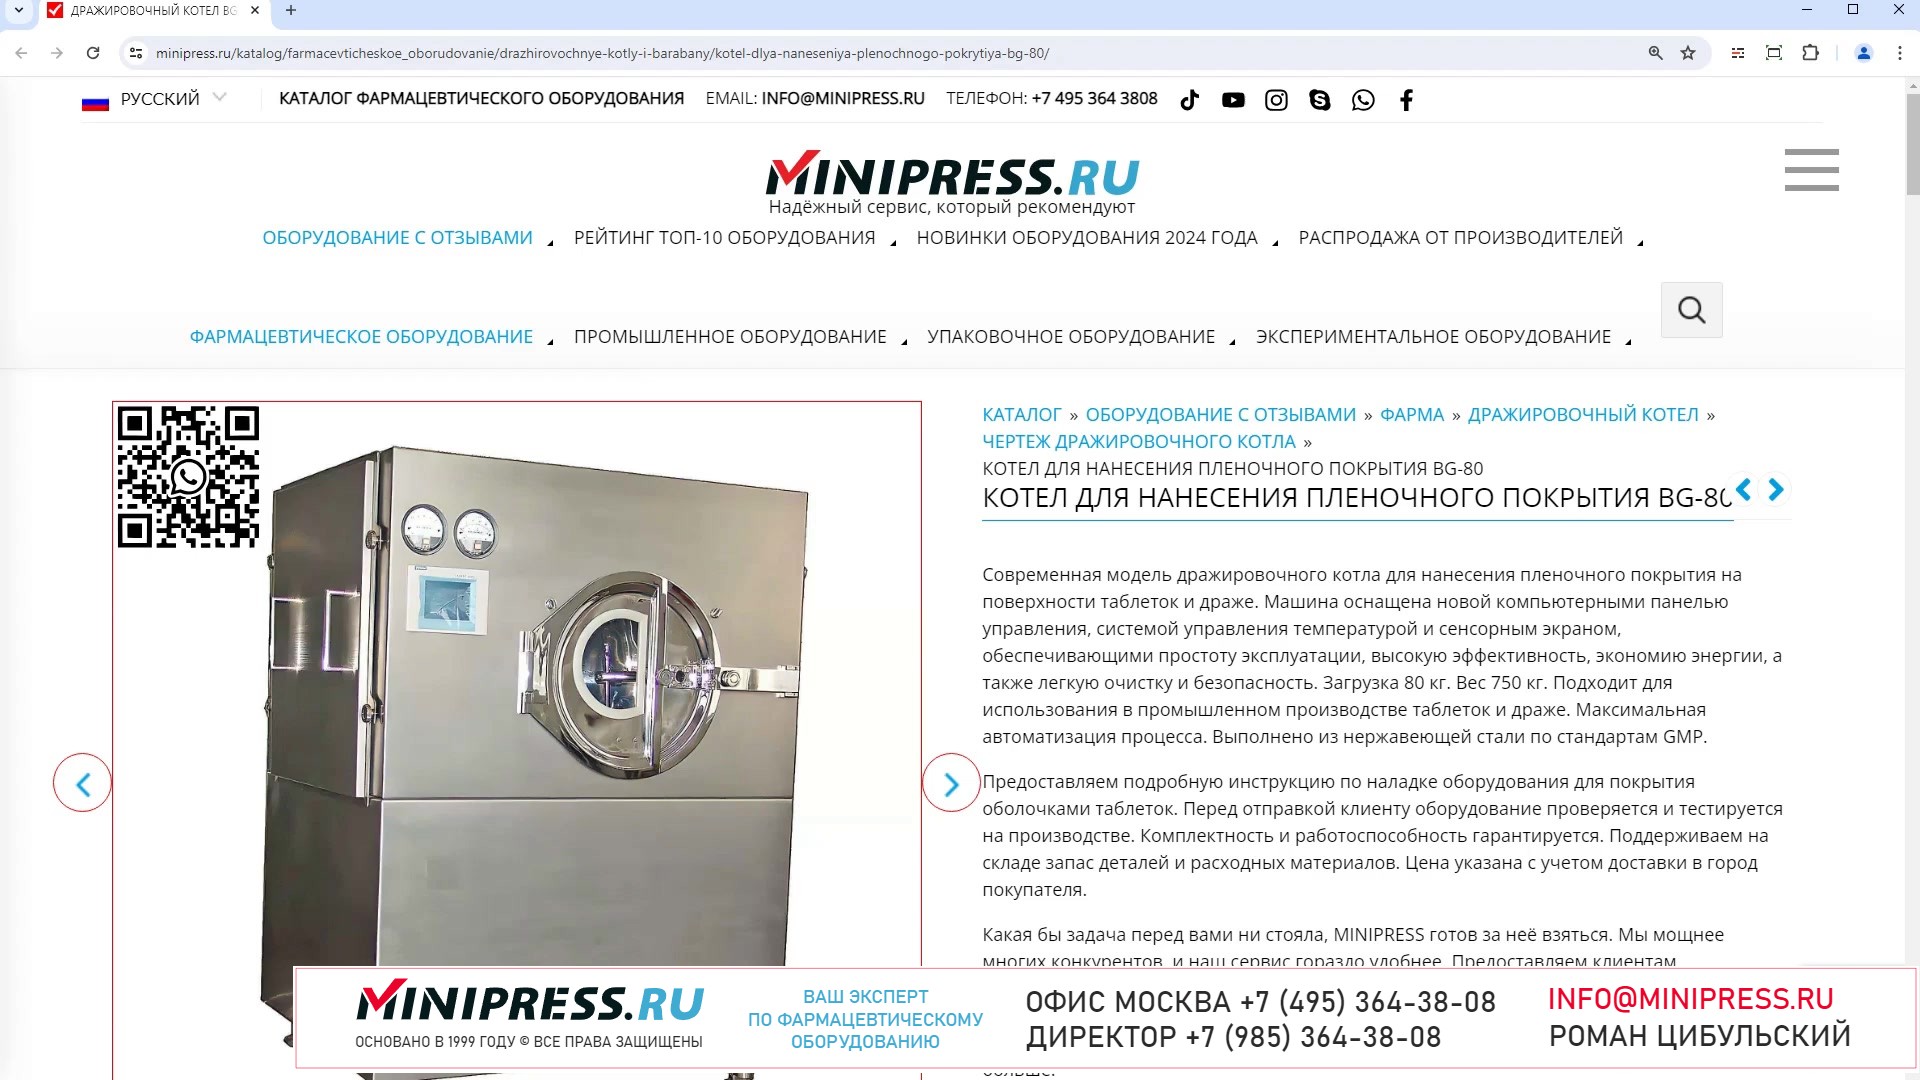 Minipress.ru Котел для нанесения пленочного покрытия BG-80